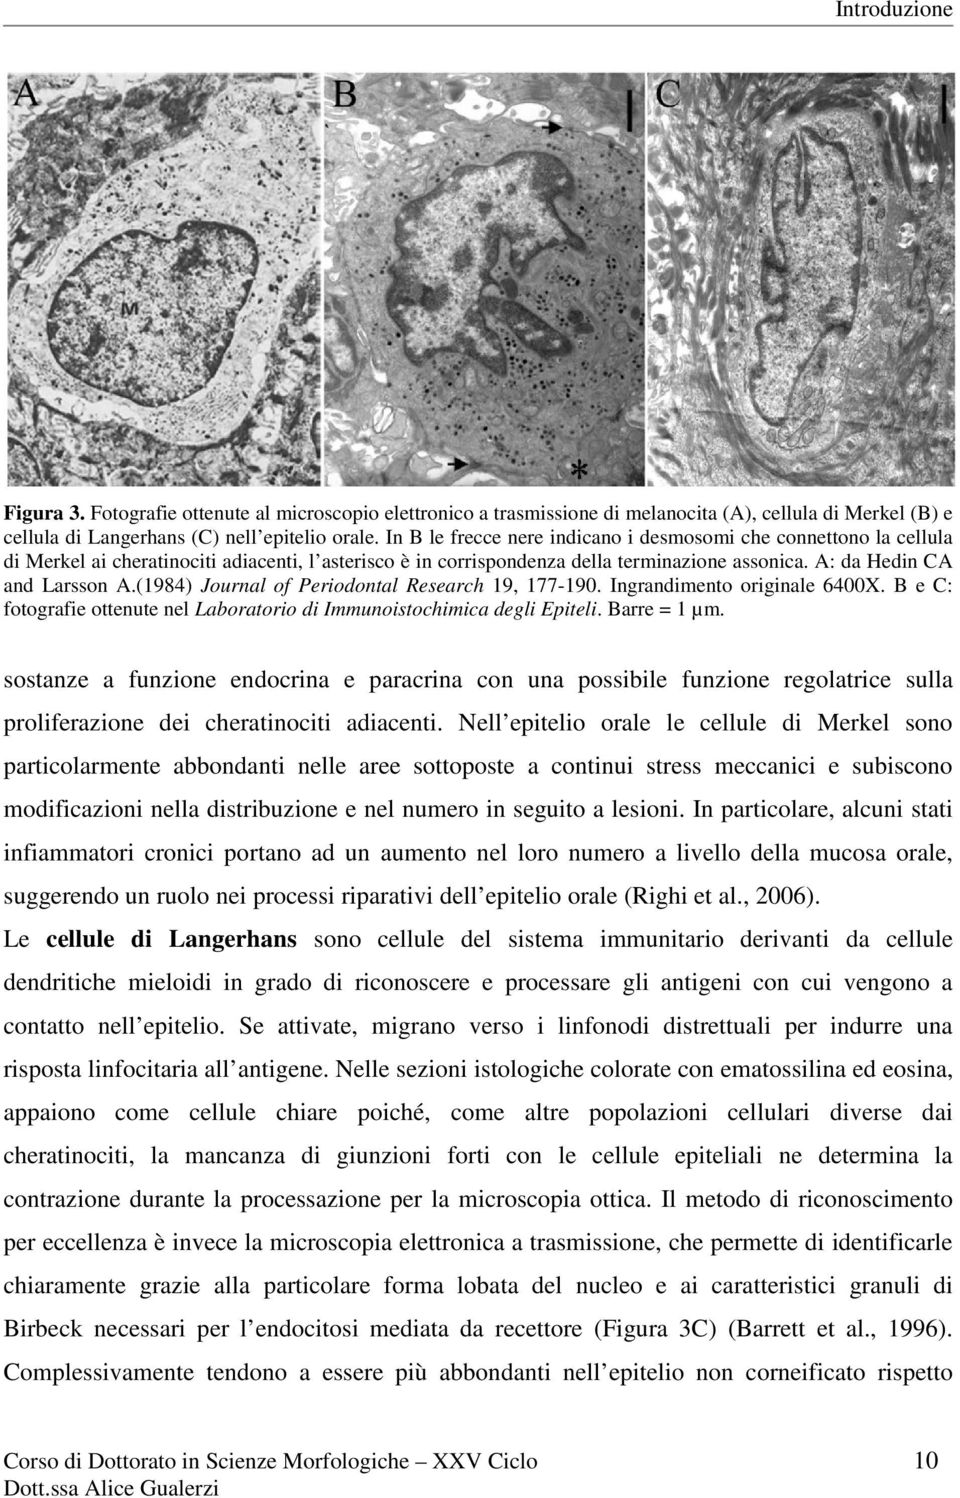 (1984) Journal of Periodontal Research 19, 177-190. Ingrandimento originale 6400X. B e C: fotografie ottenute nel Laboratorio di Immunoistochimica degli Epiteli. Barre = 1 µm.